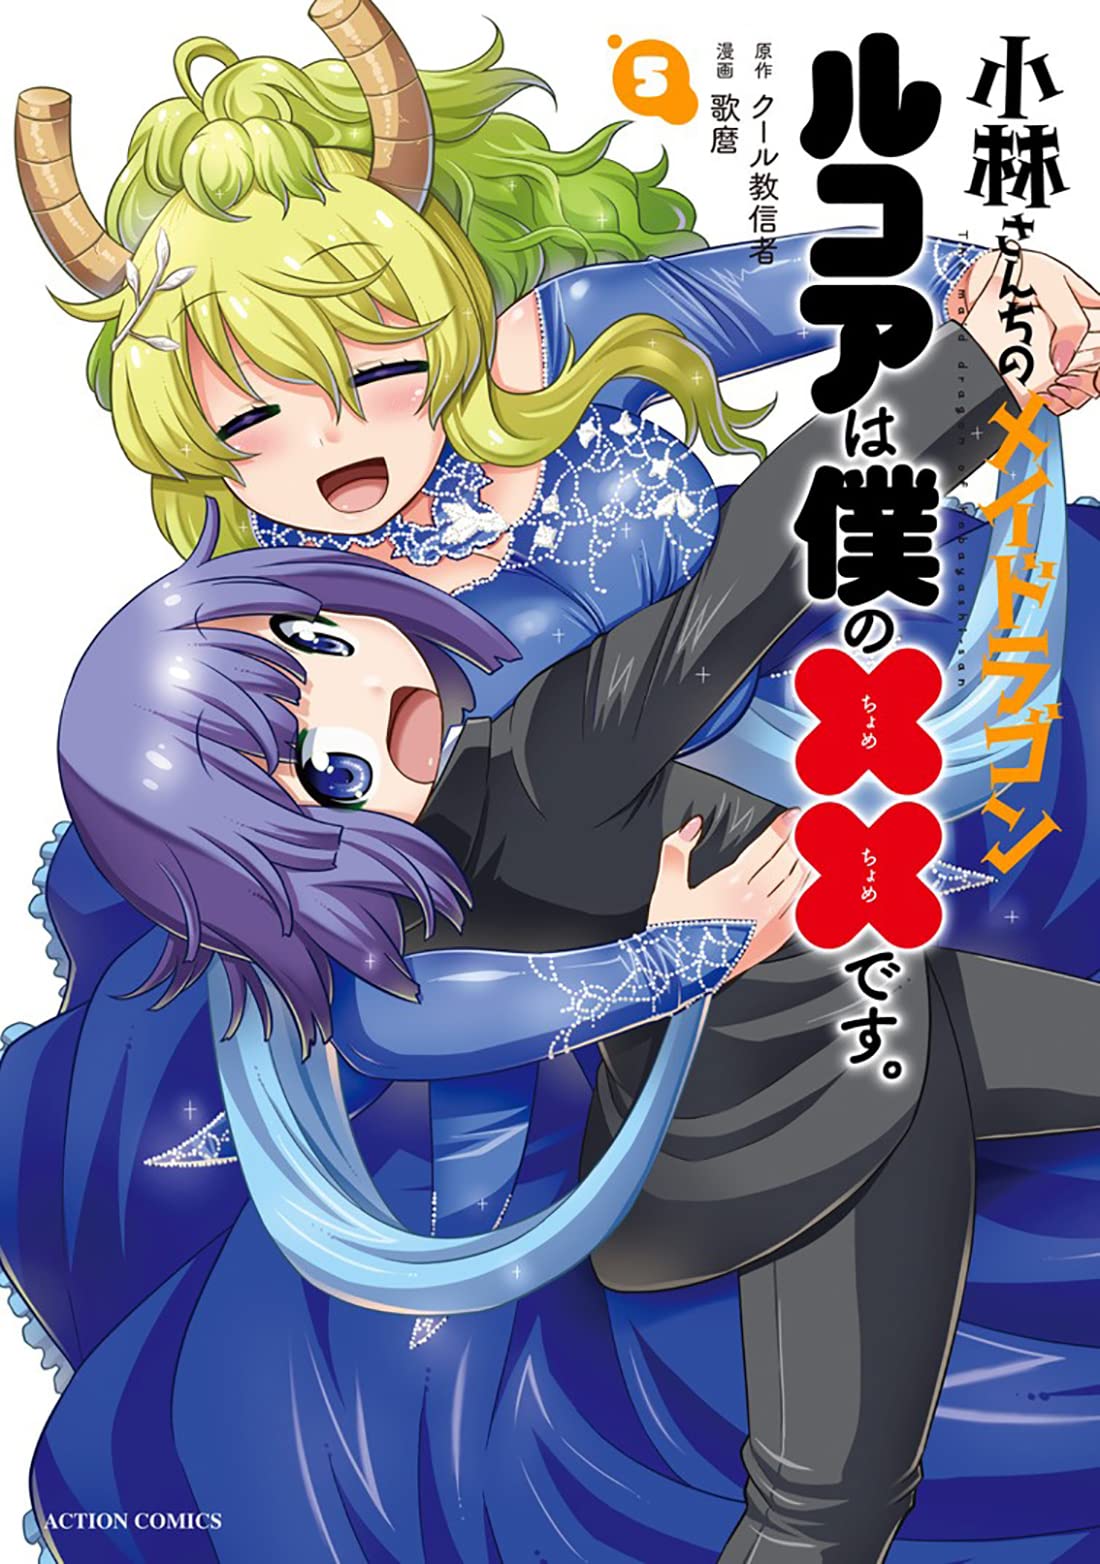 Dragon maid lucoa manga